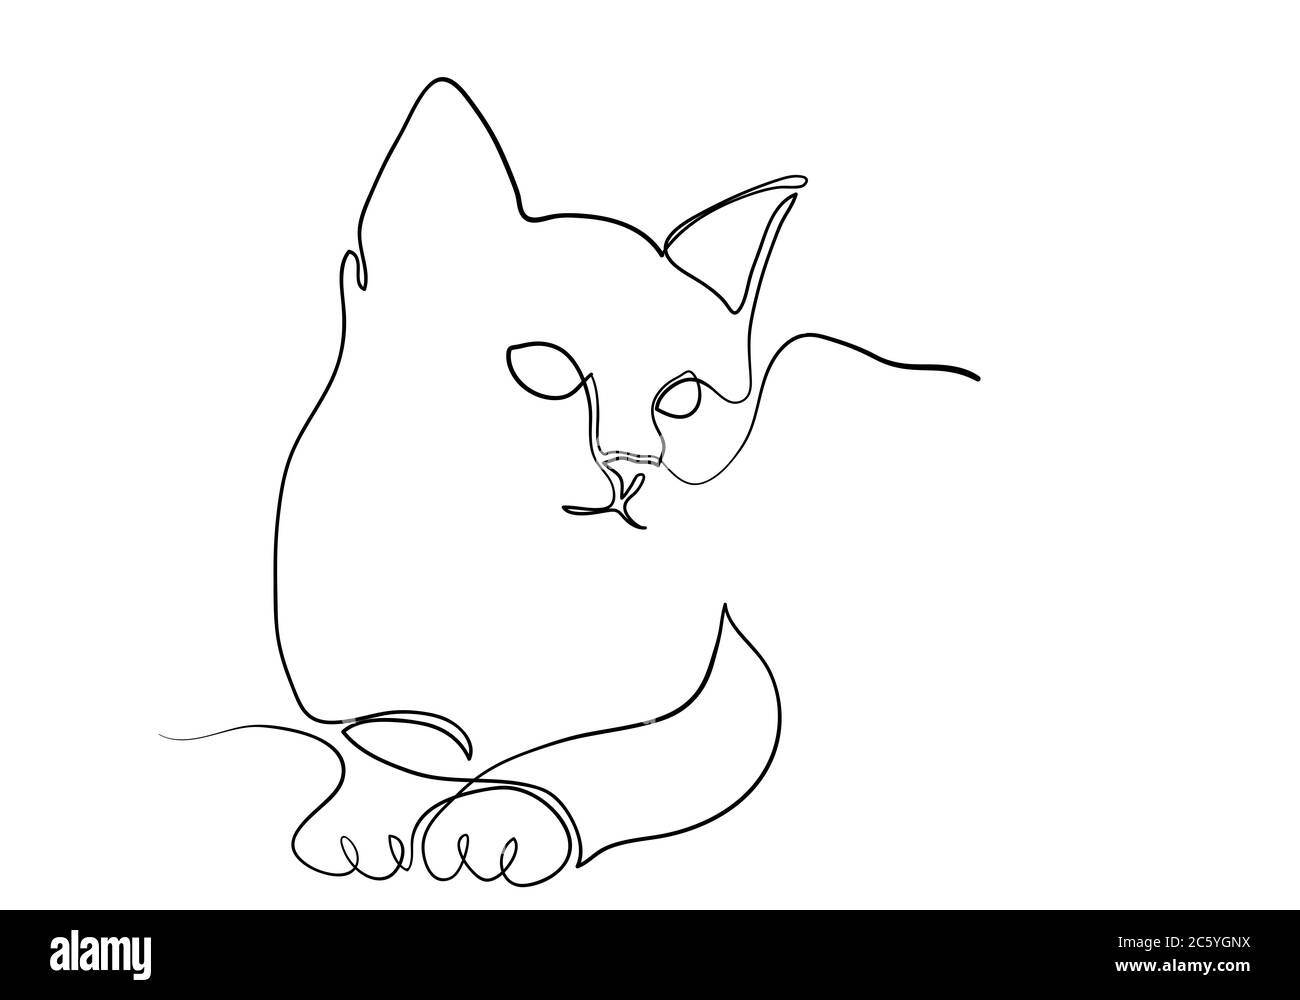 Eine Linie Zeichnung der Katze in modernem minimalistischem Stil, eine Linie zeichnen Grafik Design Illustration Stockfoto